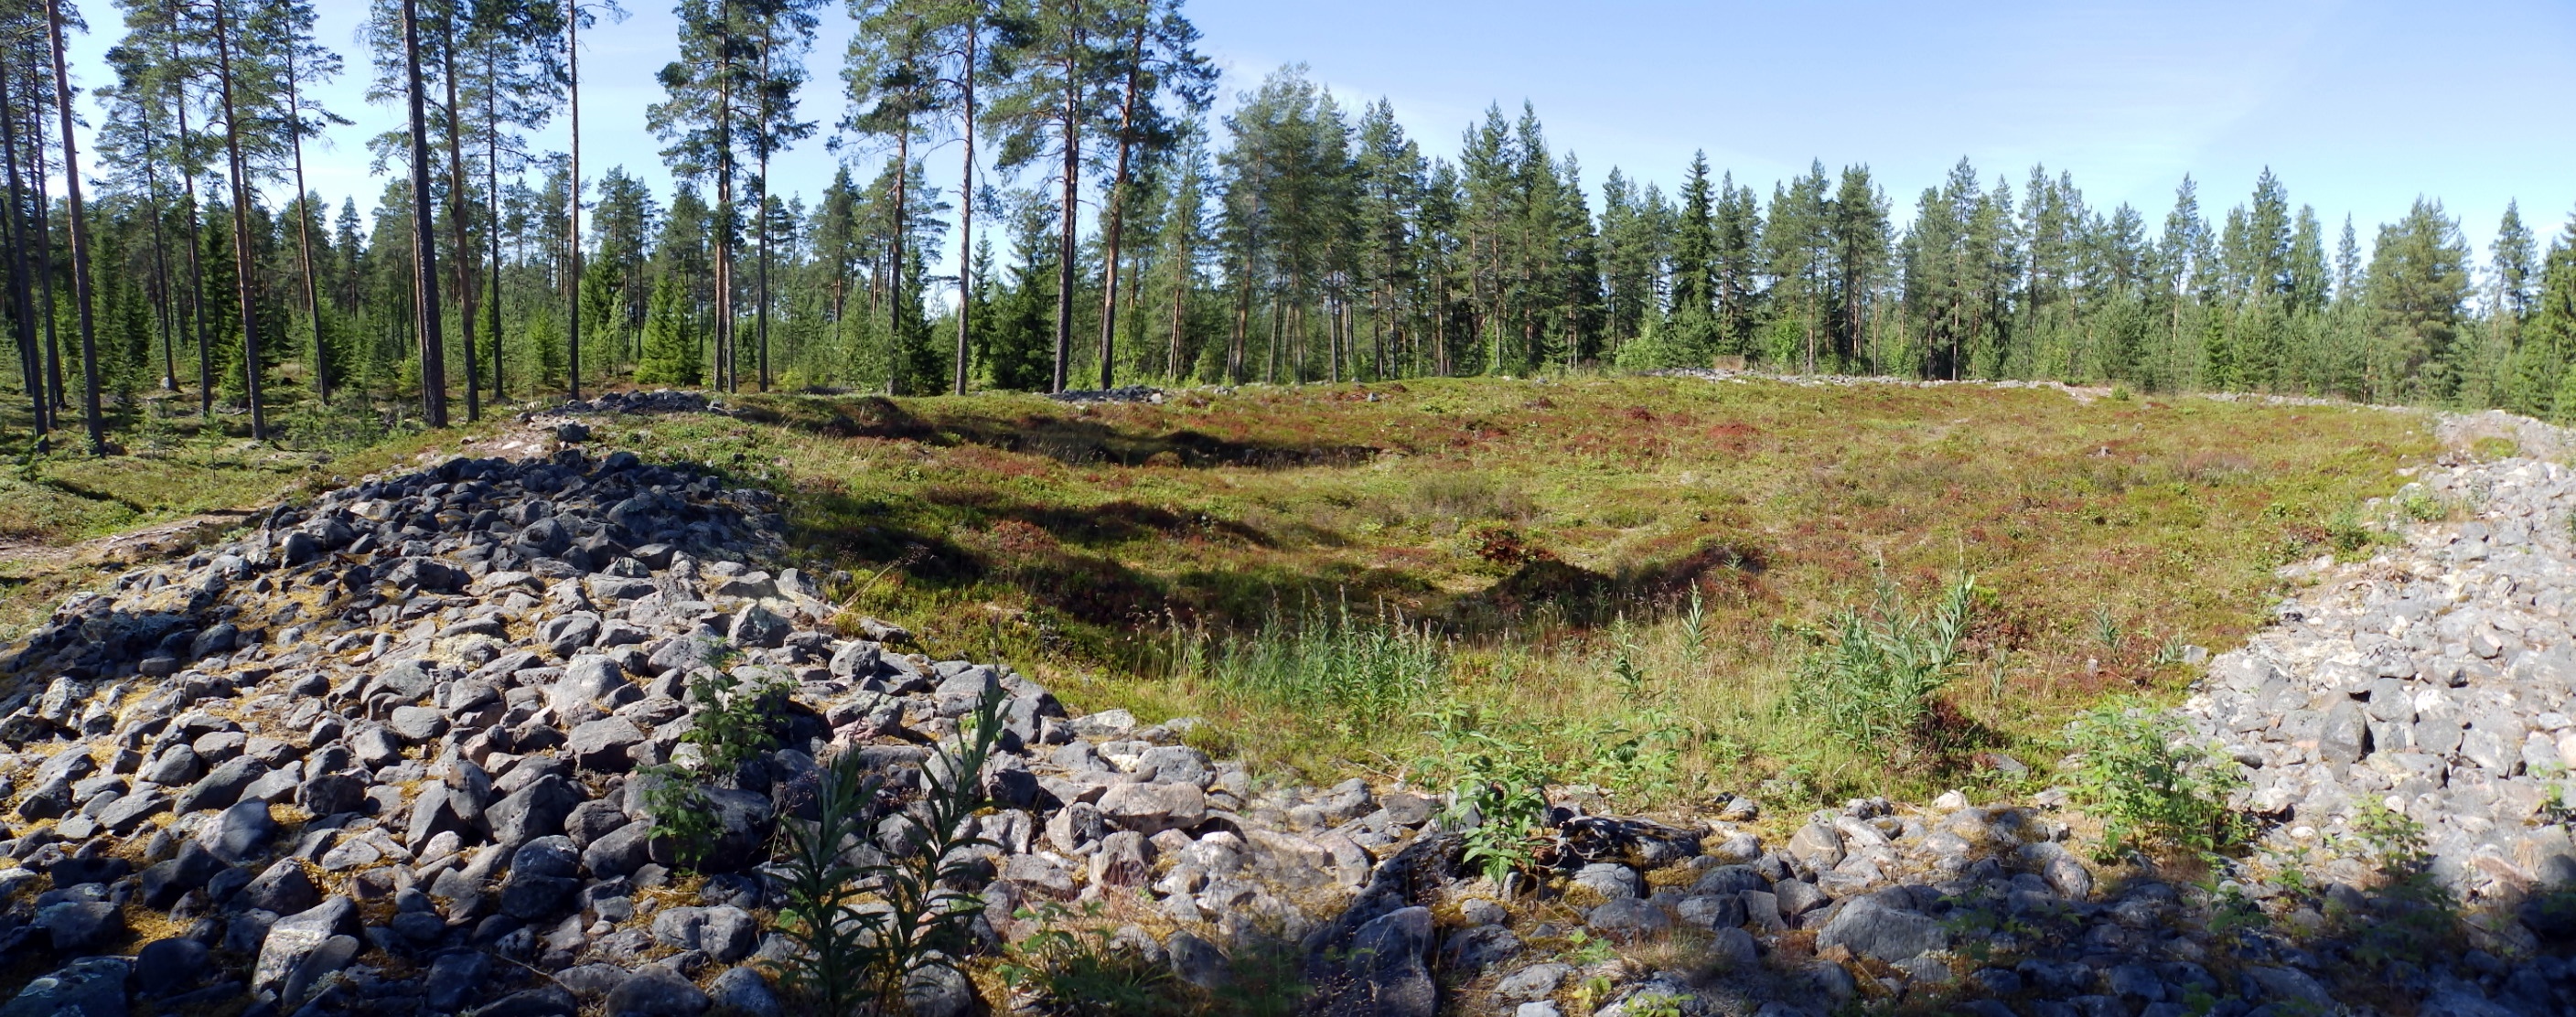 Raahen Pattijoen Kastellina tunnettu jätinkirkko on kivikautinen monumentaalirakenne.